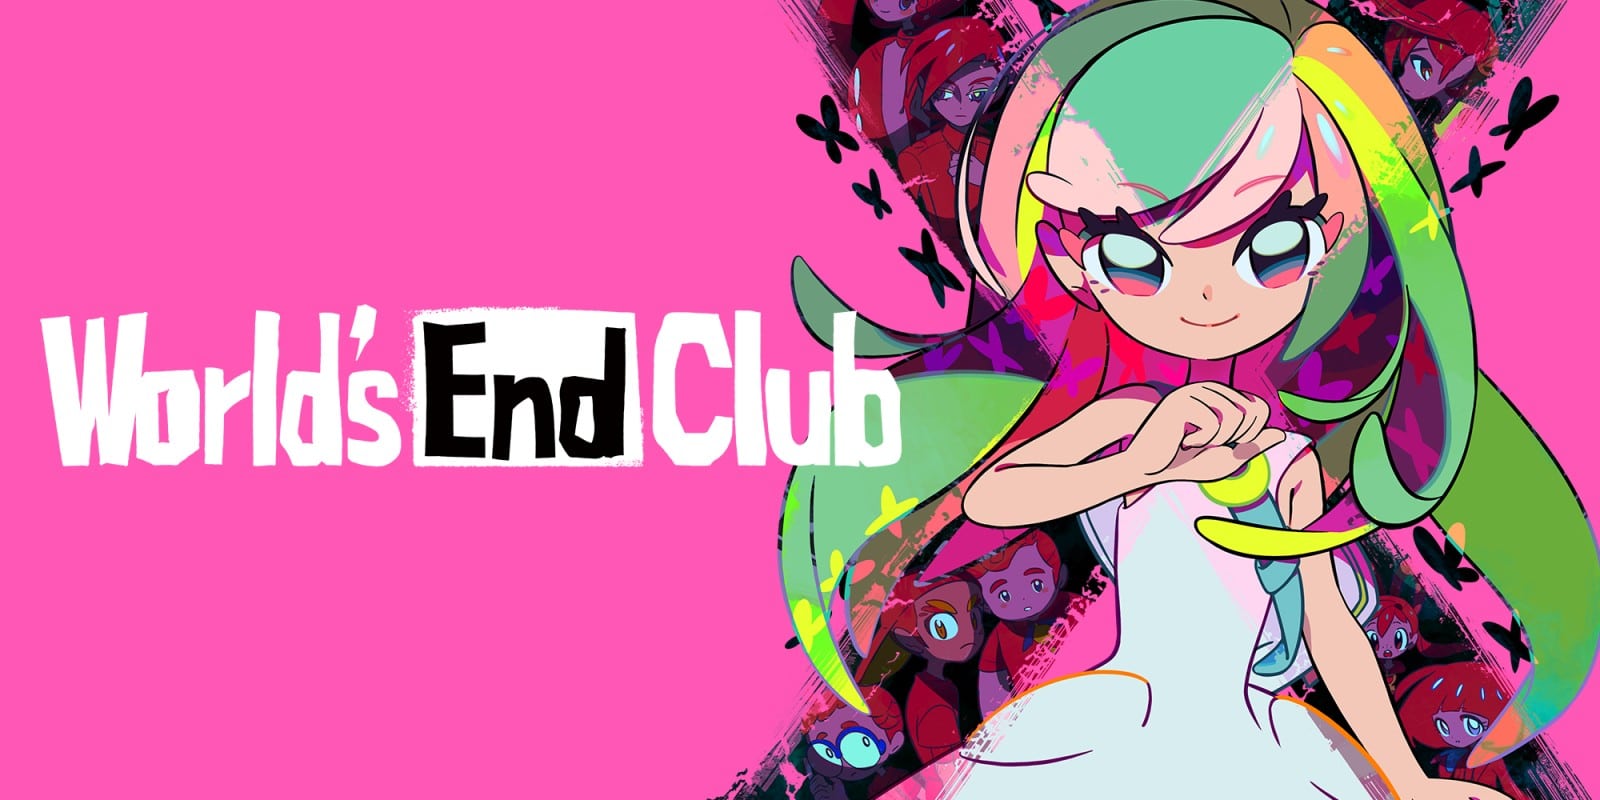 World End Club Art